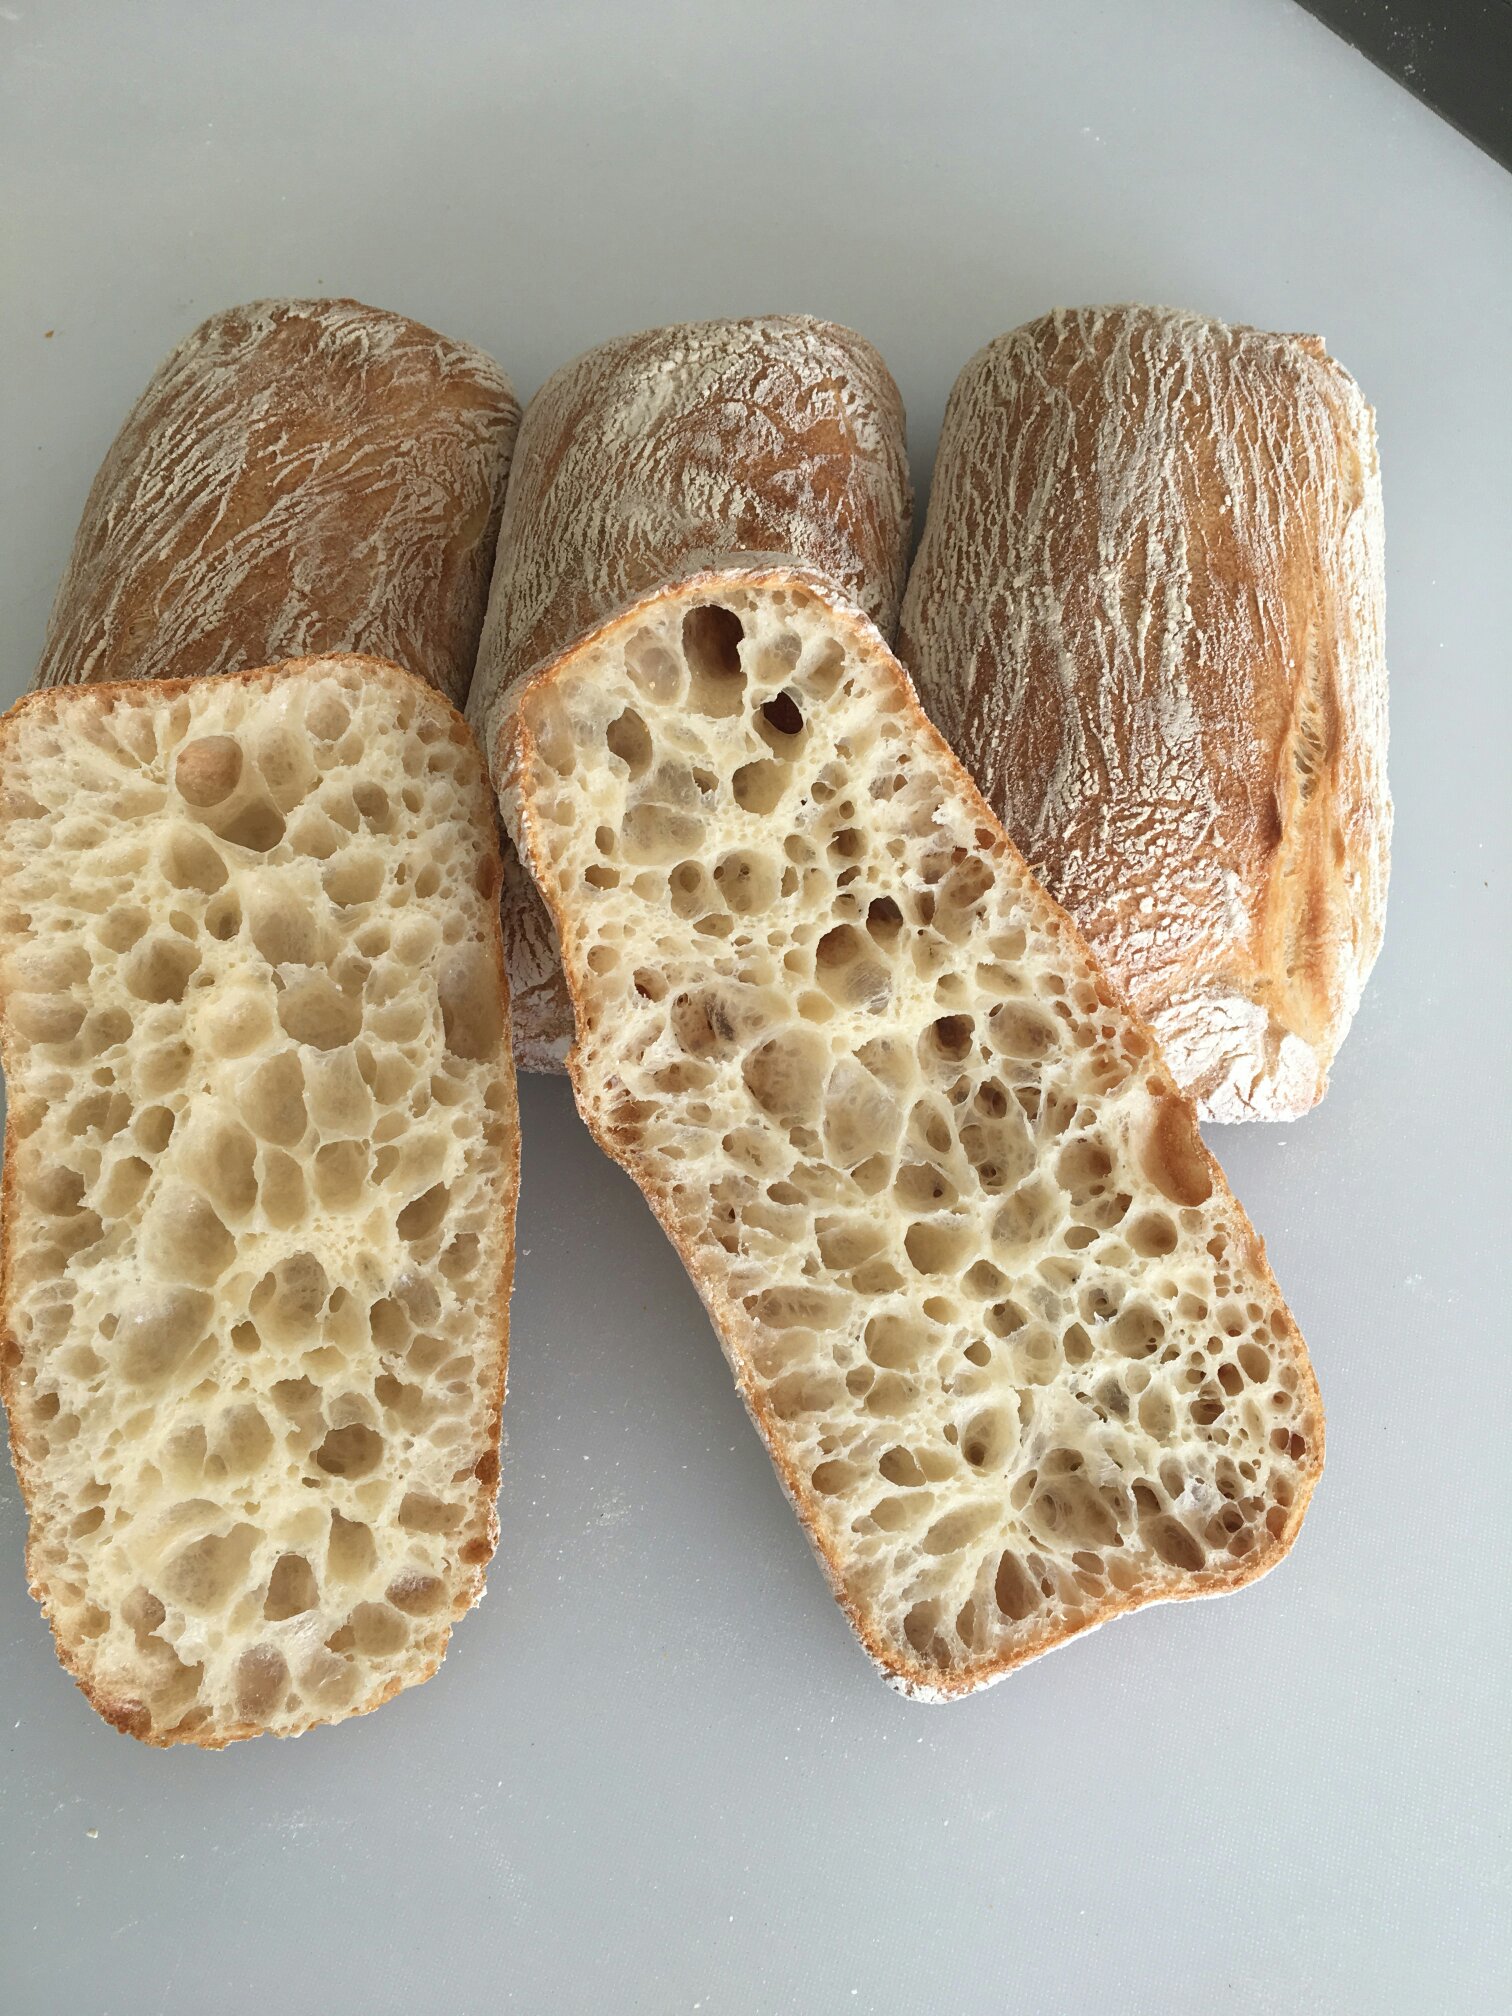 恰巴塔面包